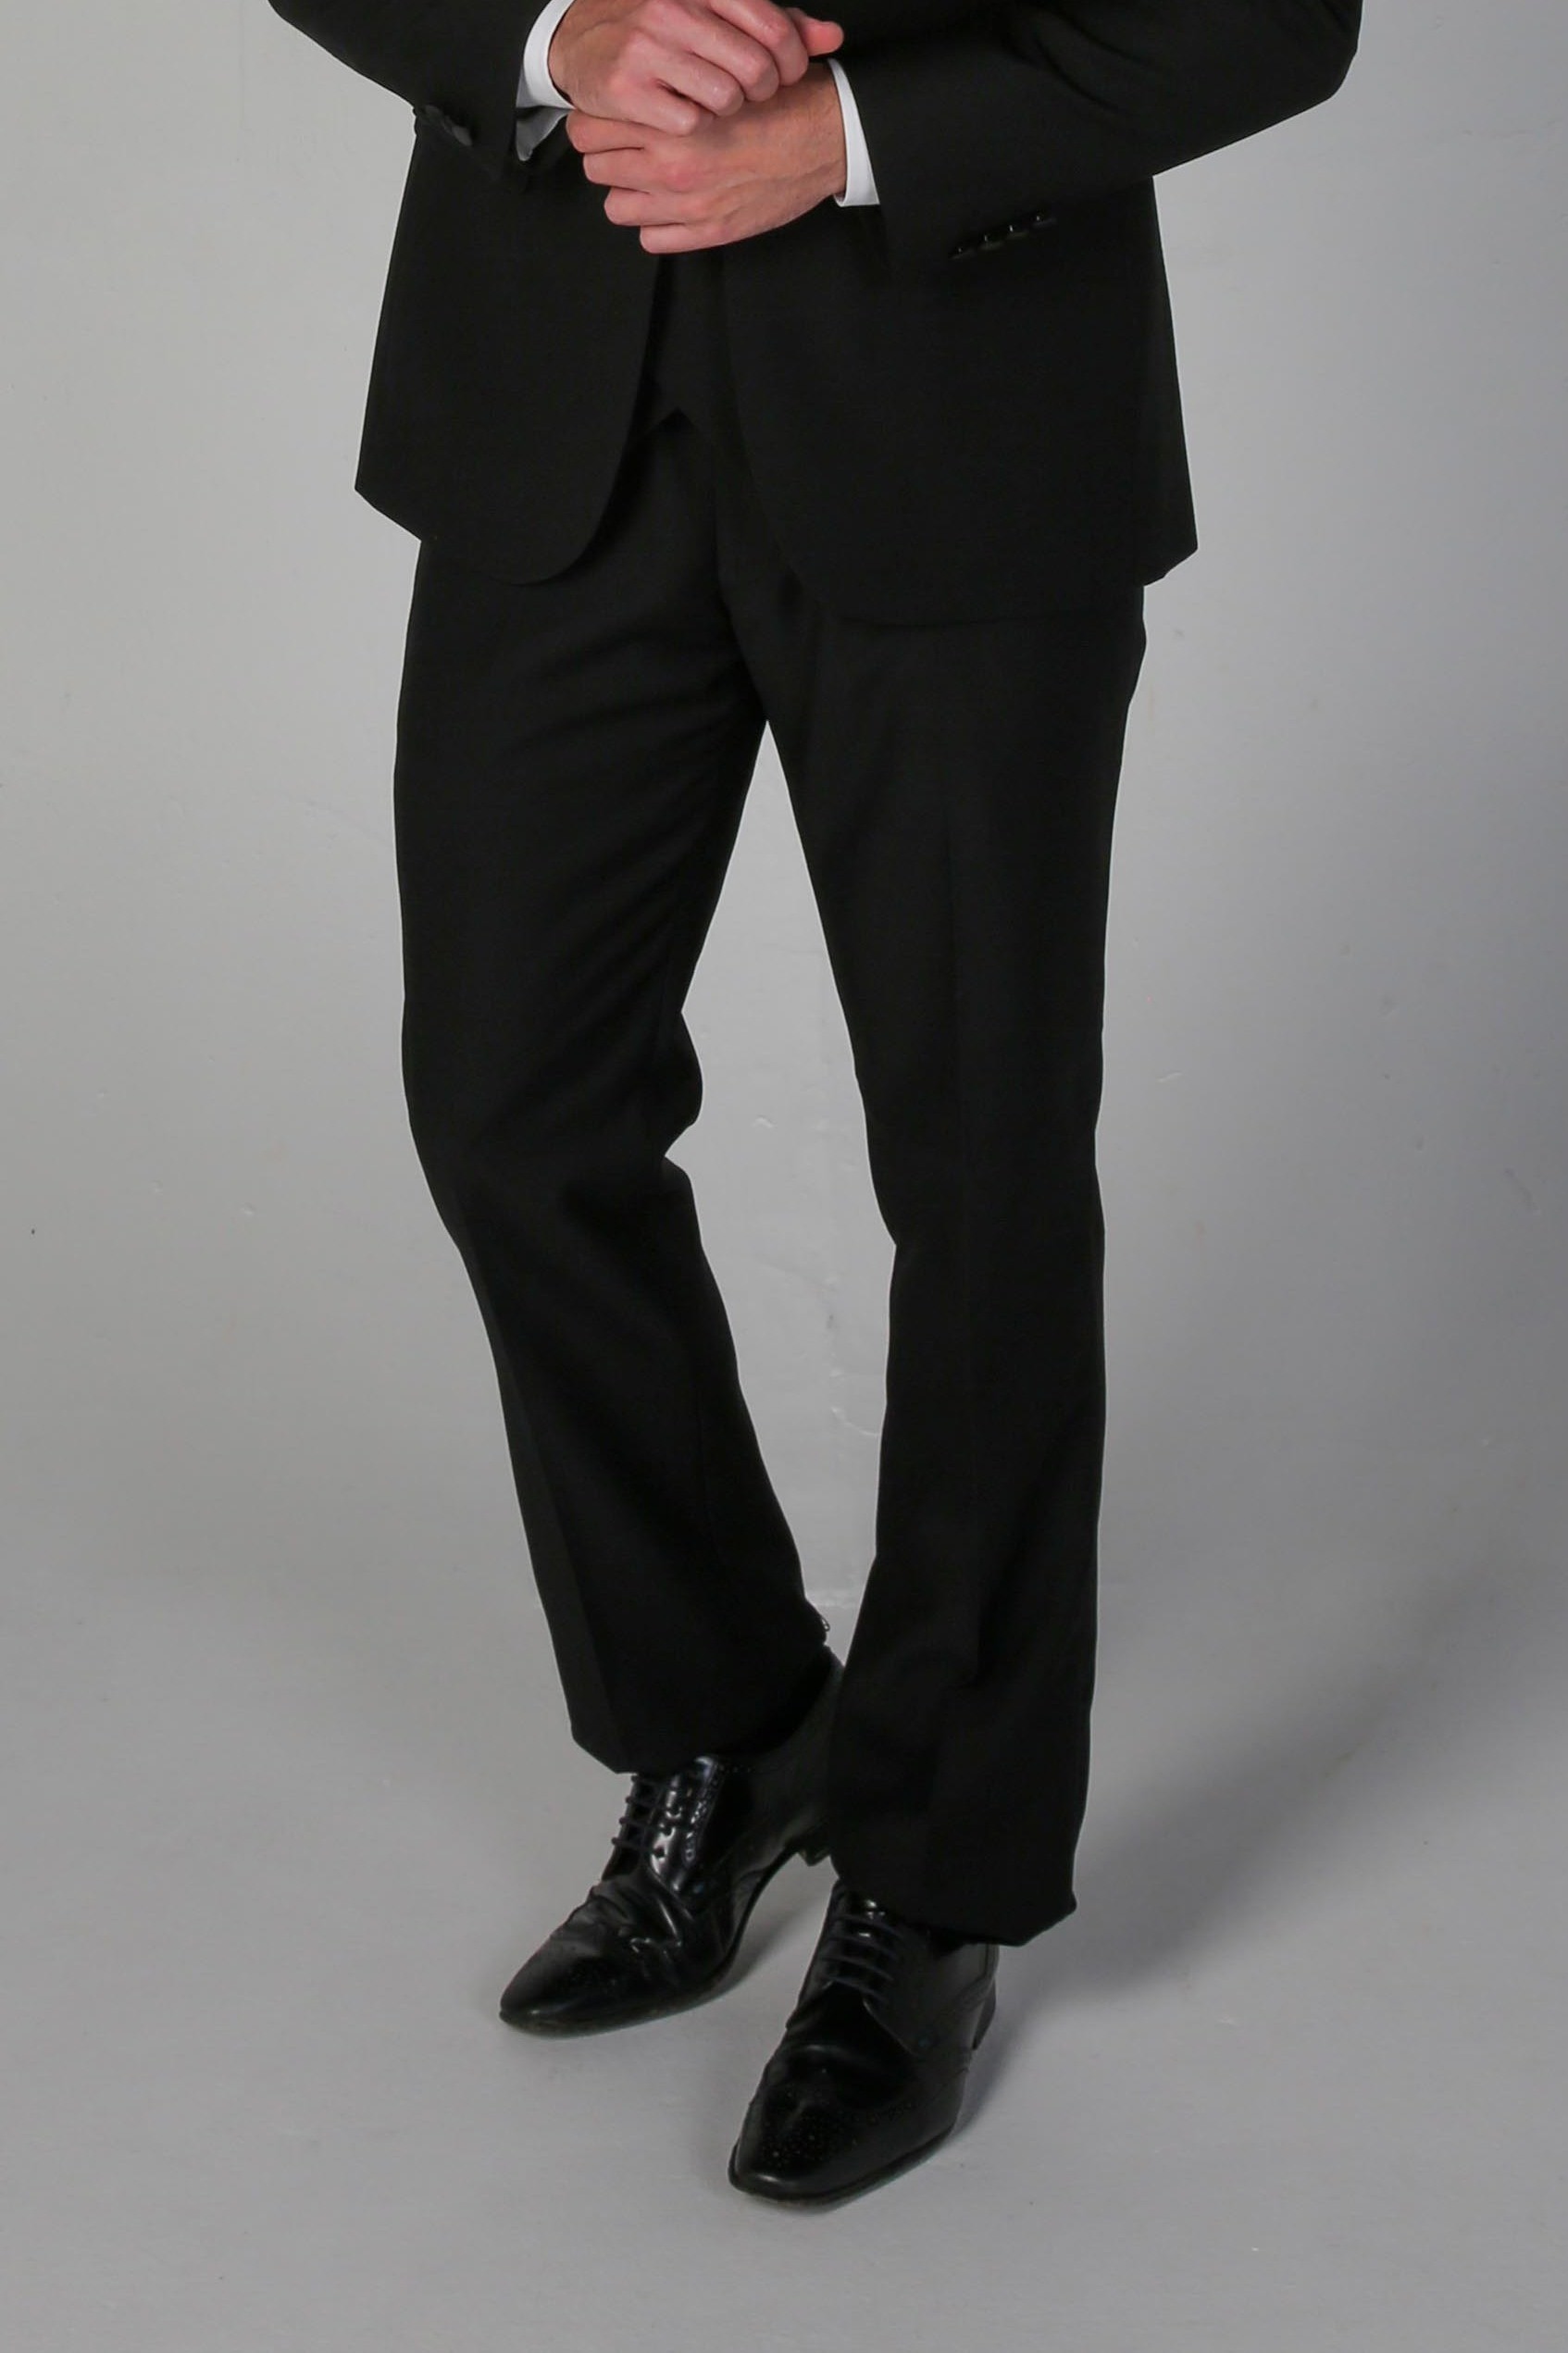 Men's Black Tuxedo Dinner Suit Pants - FORD